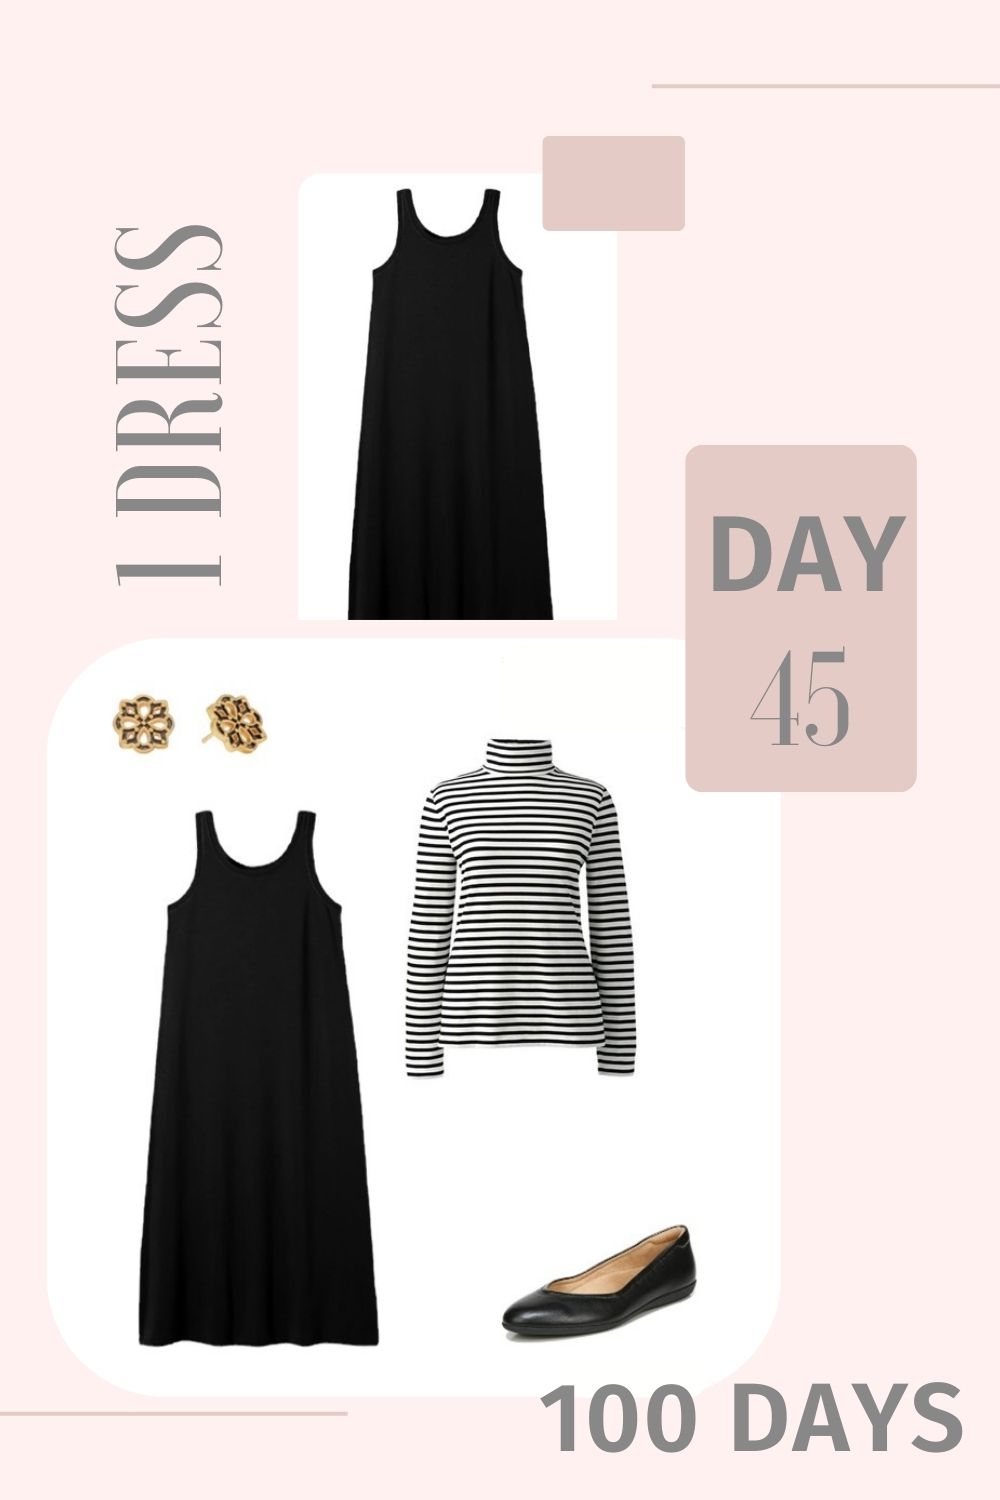 1 Dress 100 Days - Day 45